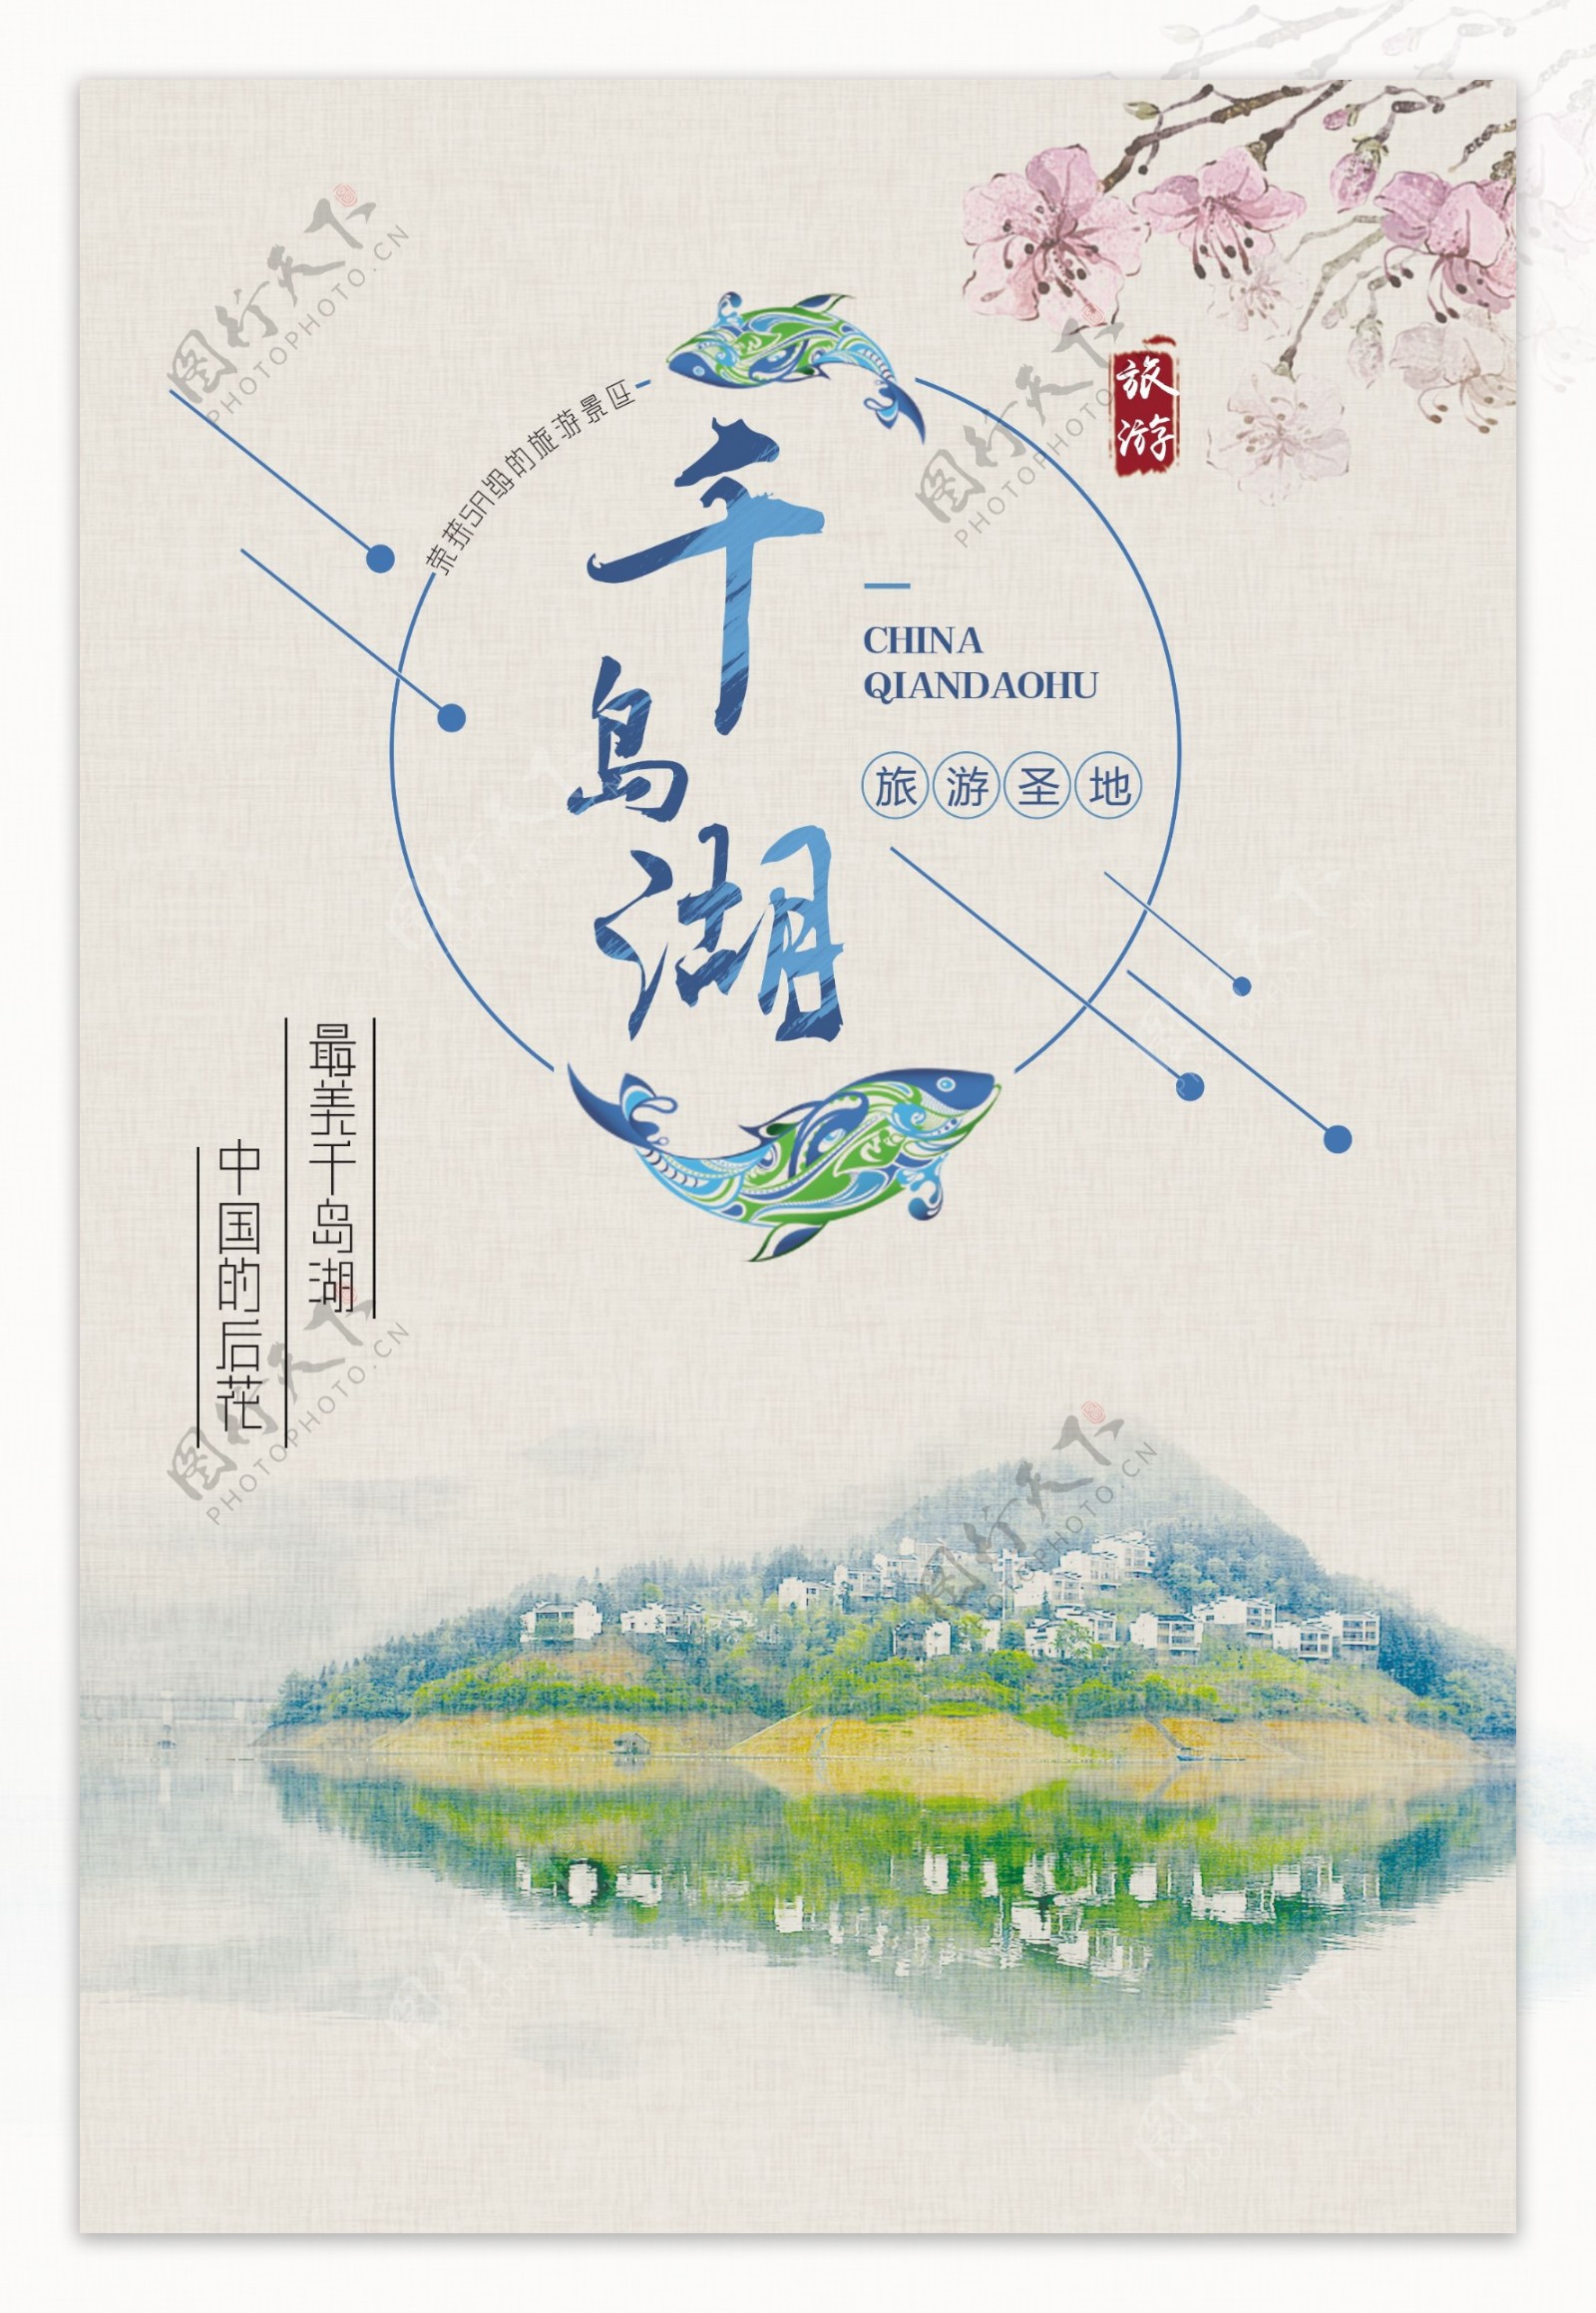 千岛湖旅游景点景区宣传海报